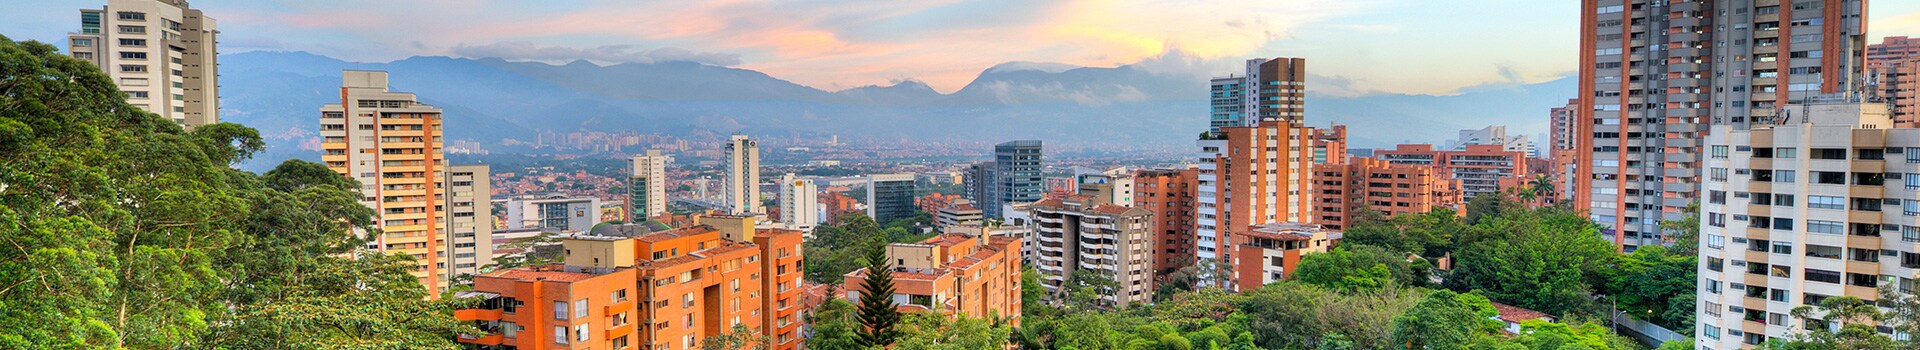 Medellín - jose marie cordova